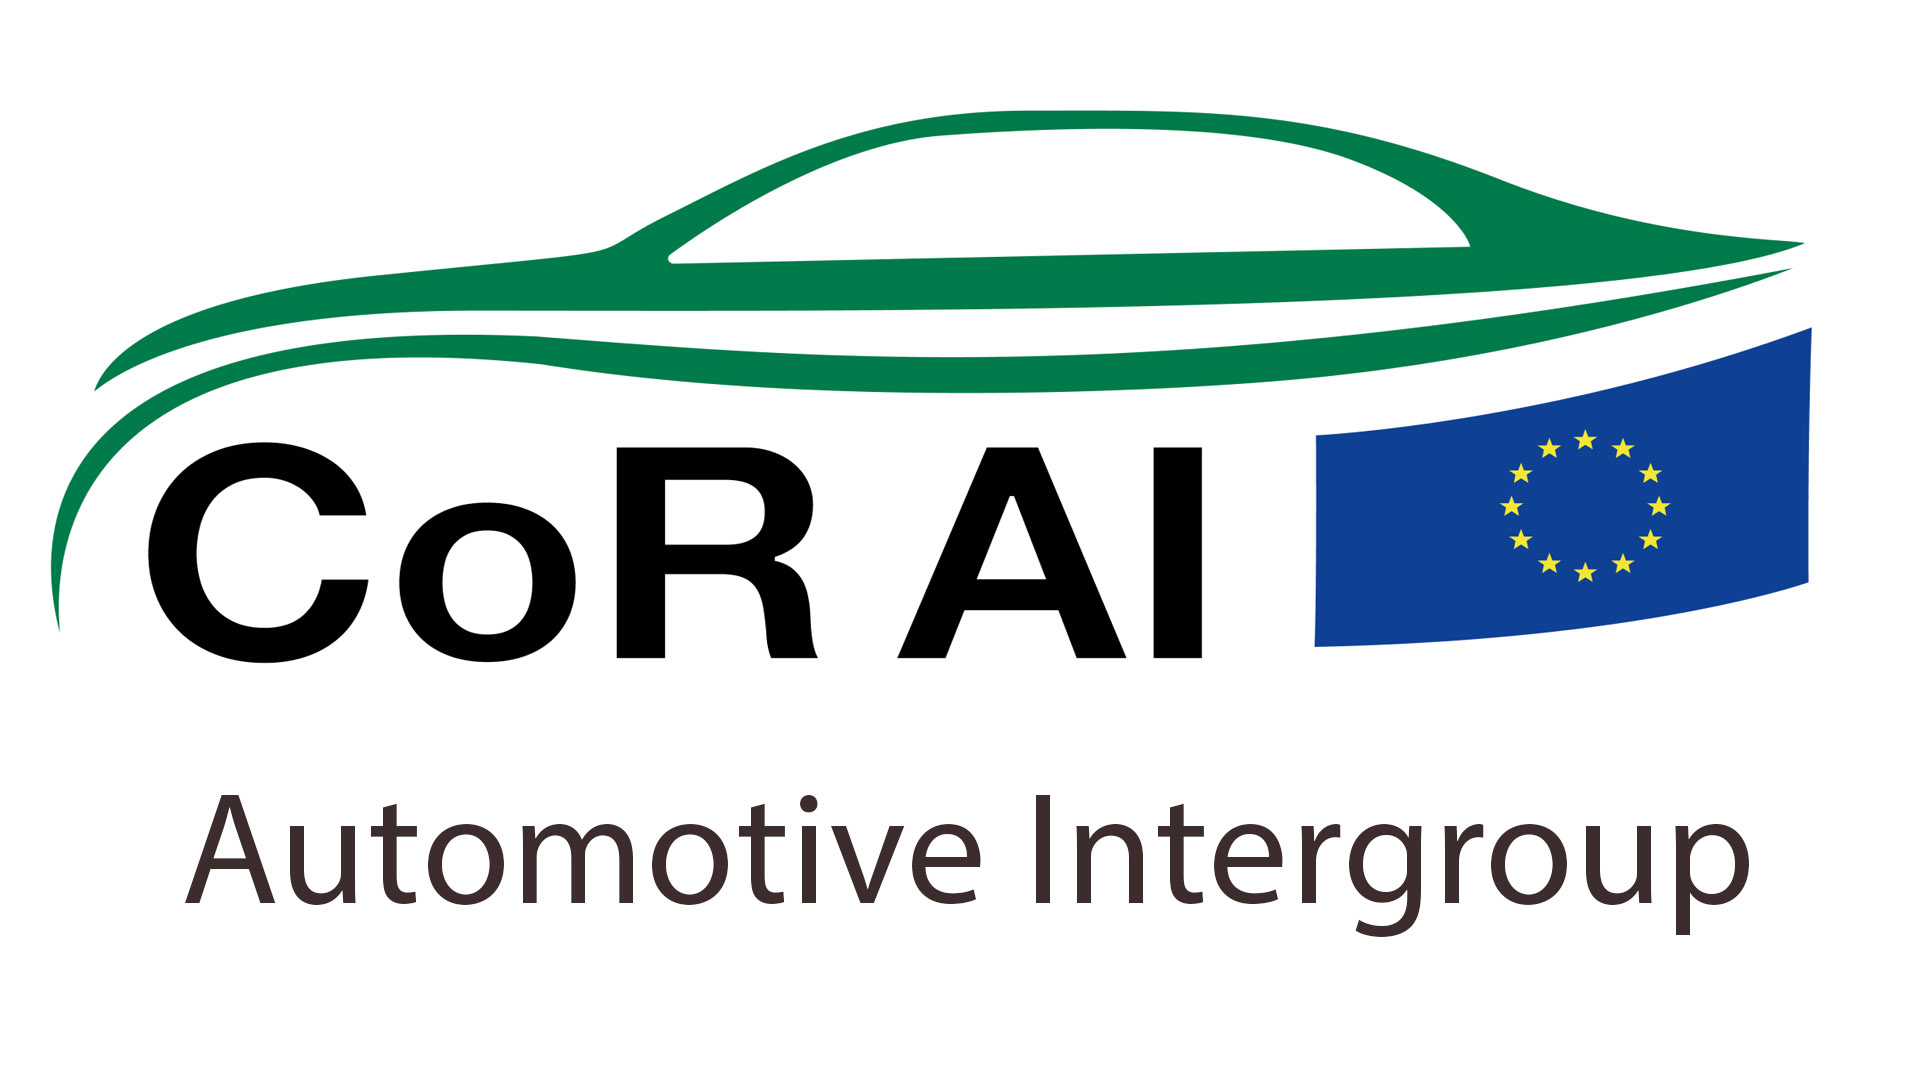 CoRAI - Automotive Intergroup